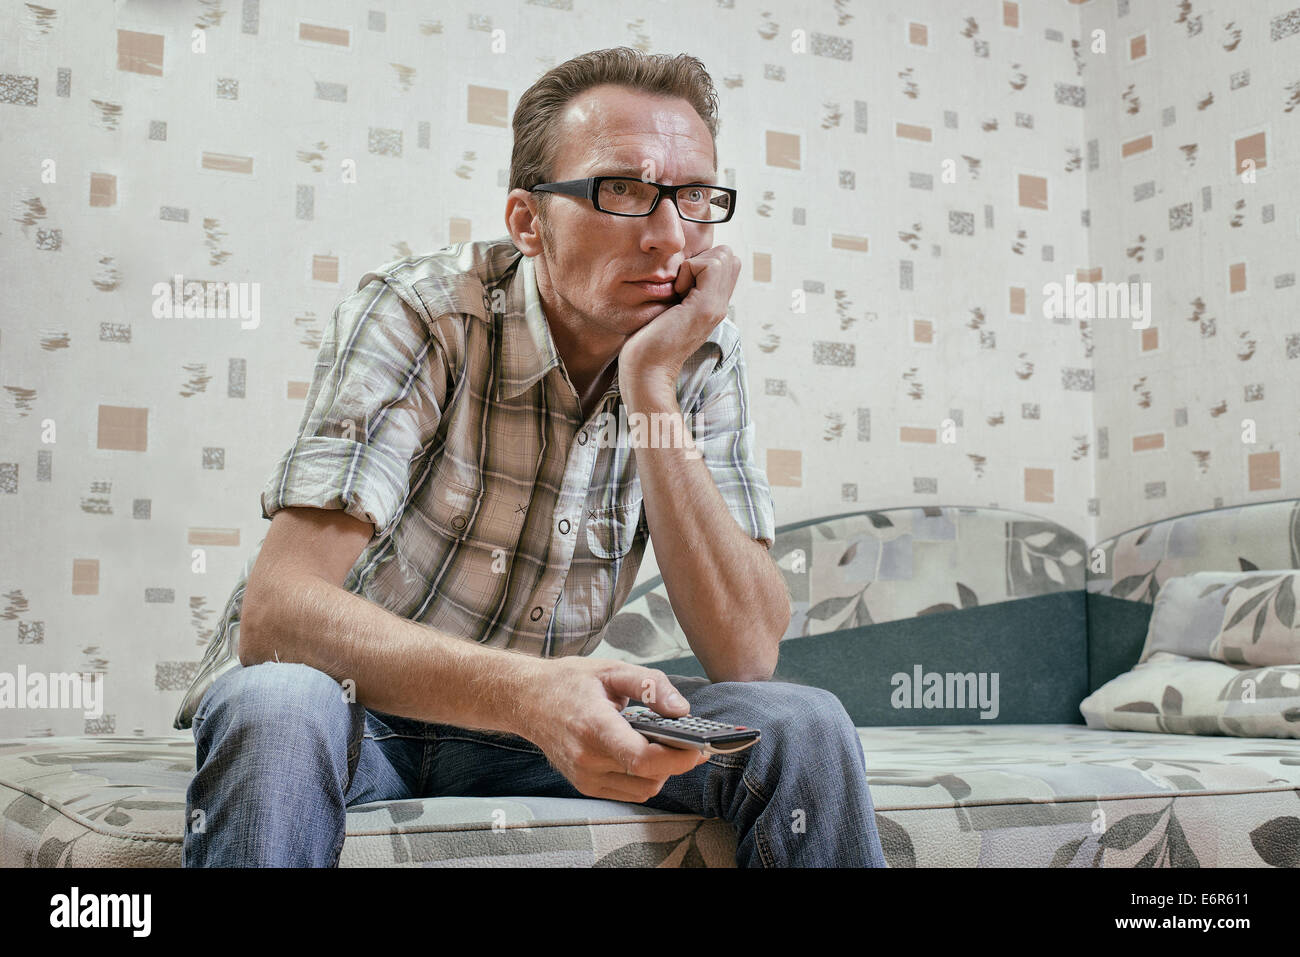 Traurige und ernste Mann mit Fernbedienung in seiner Hand Uhr Fußball Mathematik oder Nachrichten im Fernsehen ausgestrahlt. Stockfoto